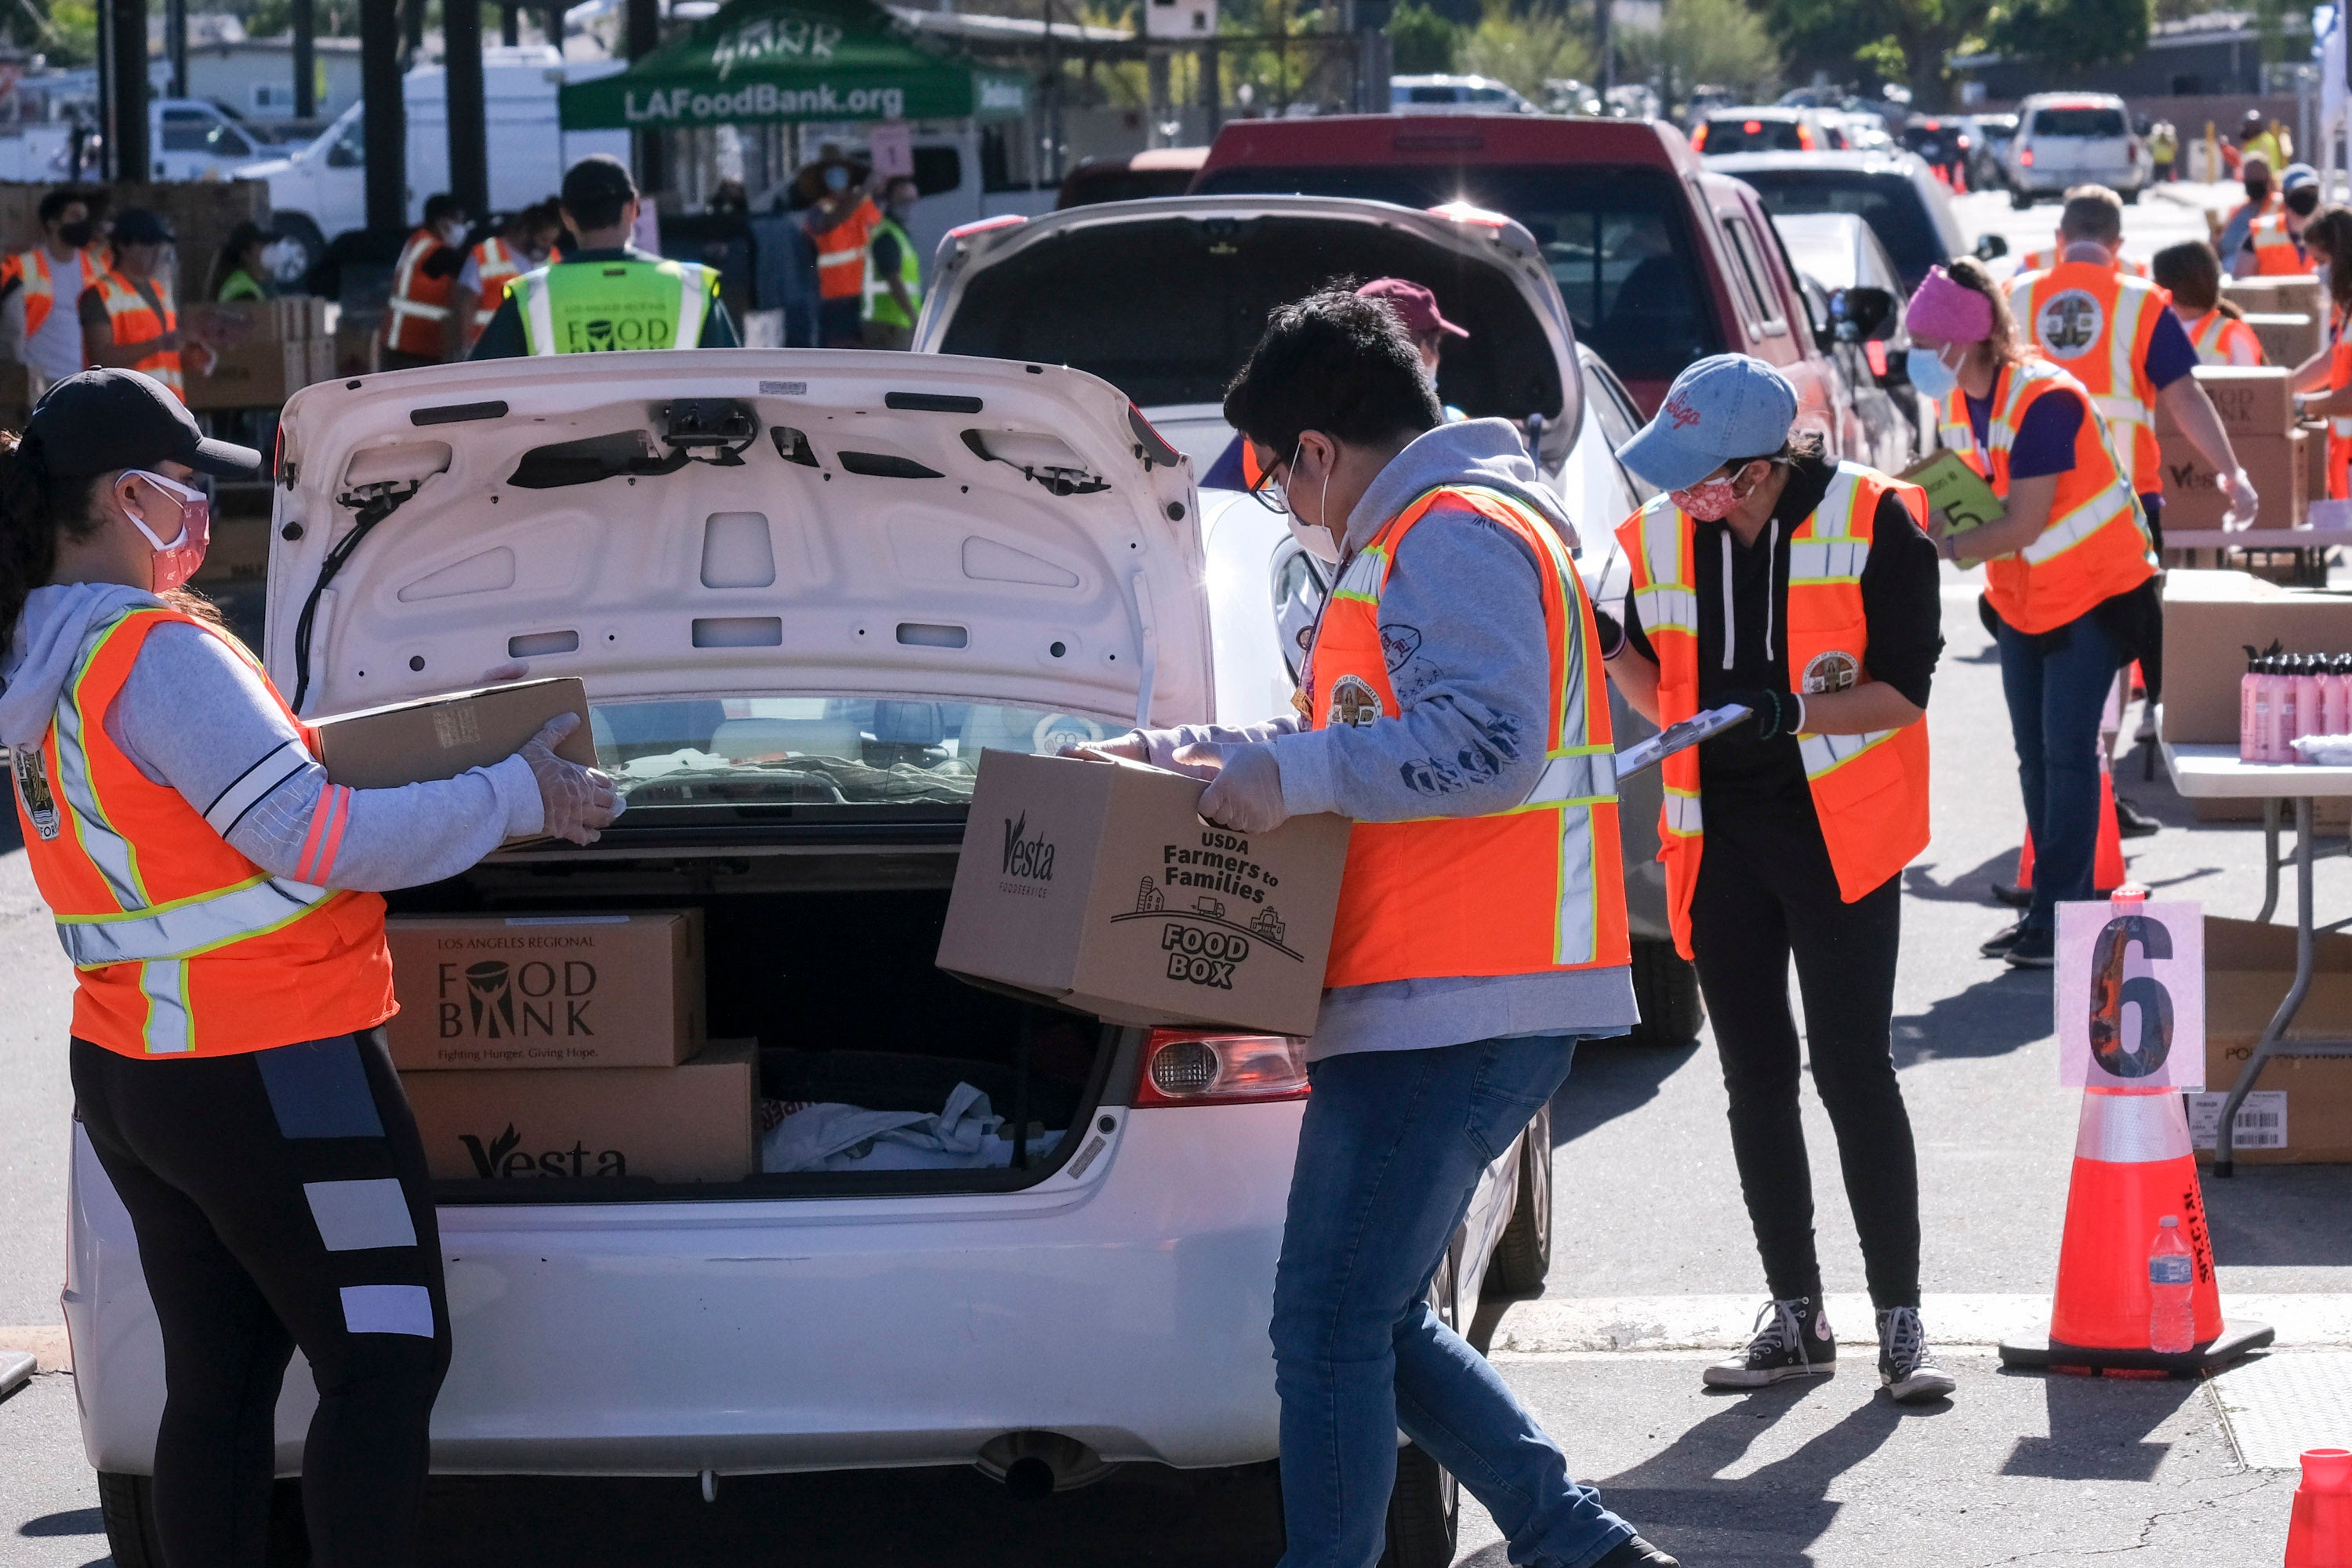 Voluntarios ponen alimentos en el maletero de automóviles durante la campaña de distribución vehicular de alimentos “Let’s Feed LA County” organizada por Los Angeles Regional Food Bank y la Oficina de la Supervisora Hilda Solís el 23 de febrero de 2021, en La Puente, California. 